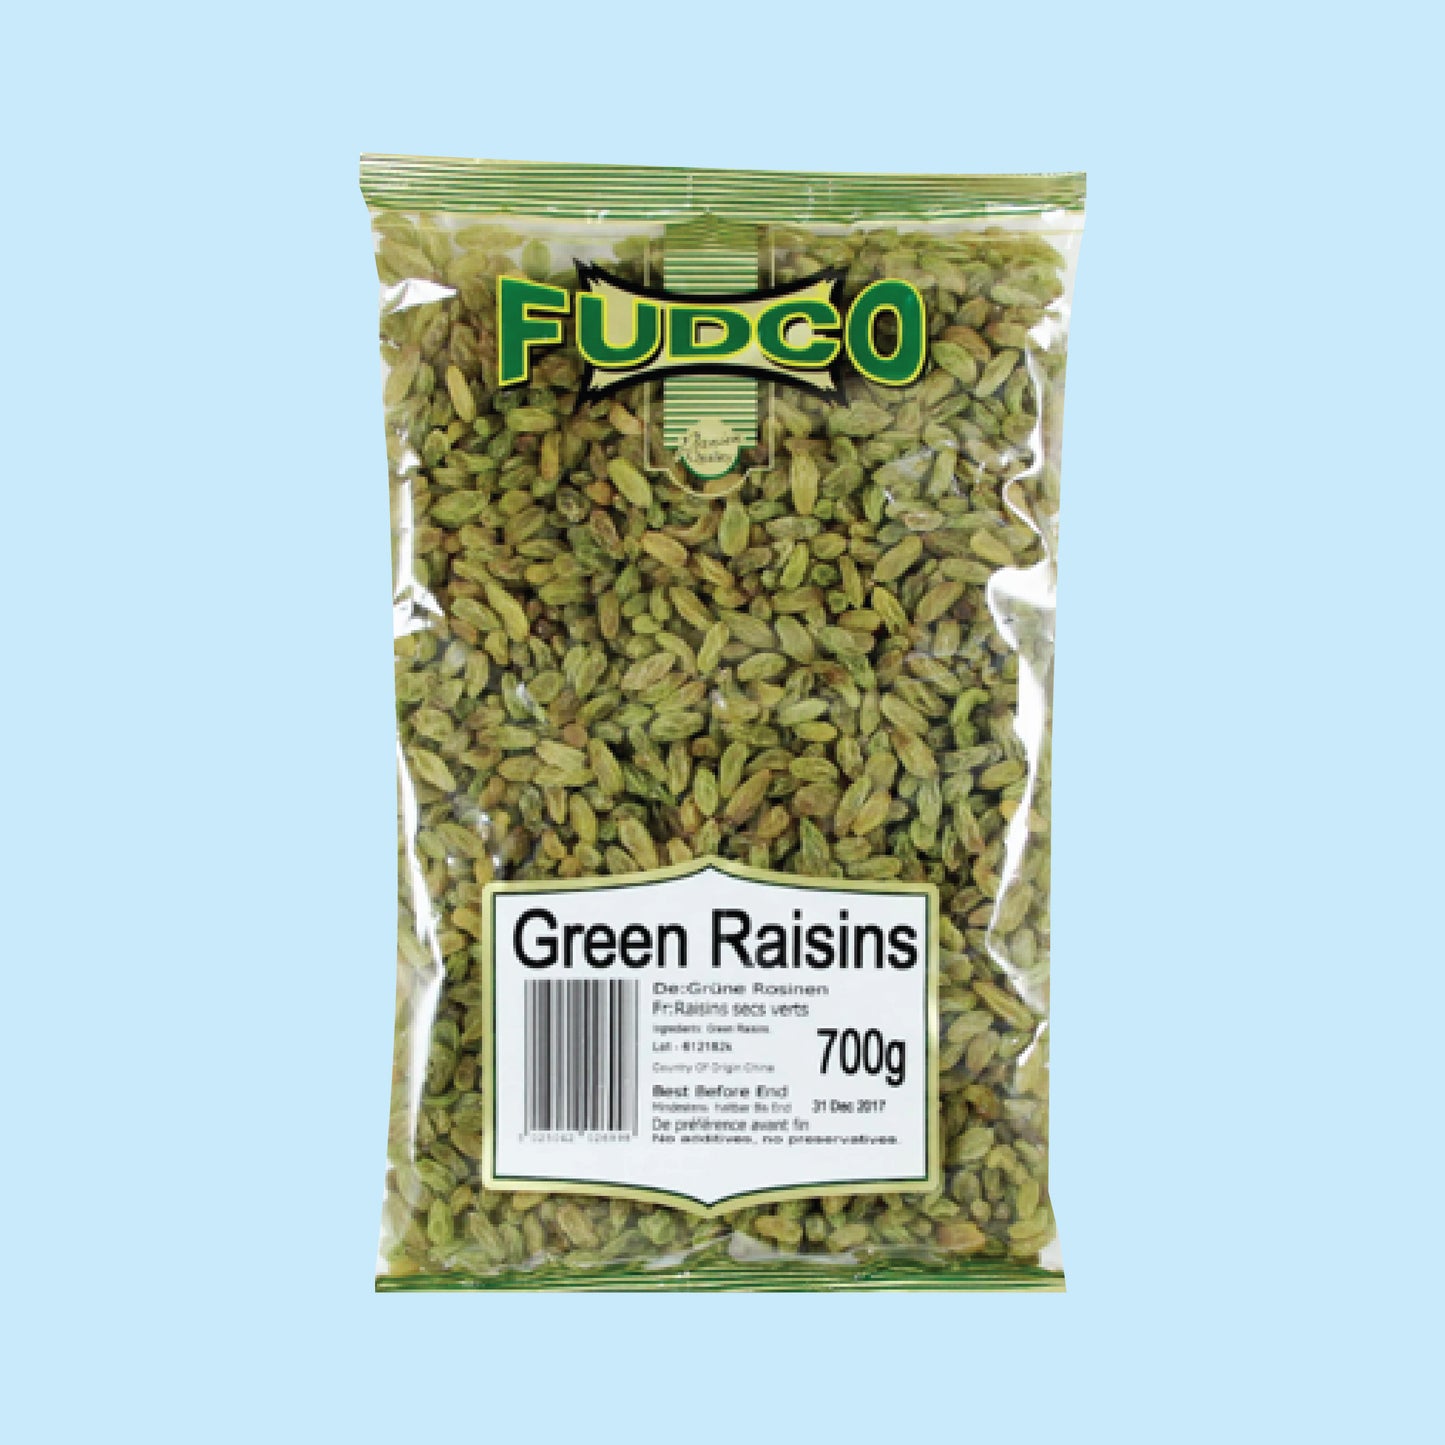 Fudco Green Raisins 600g